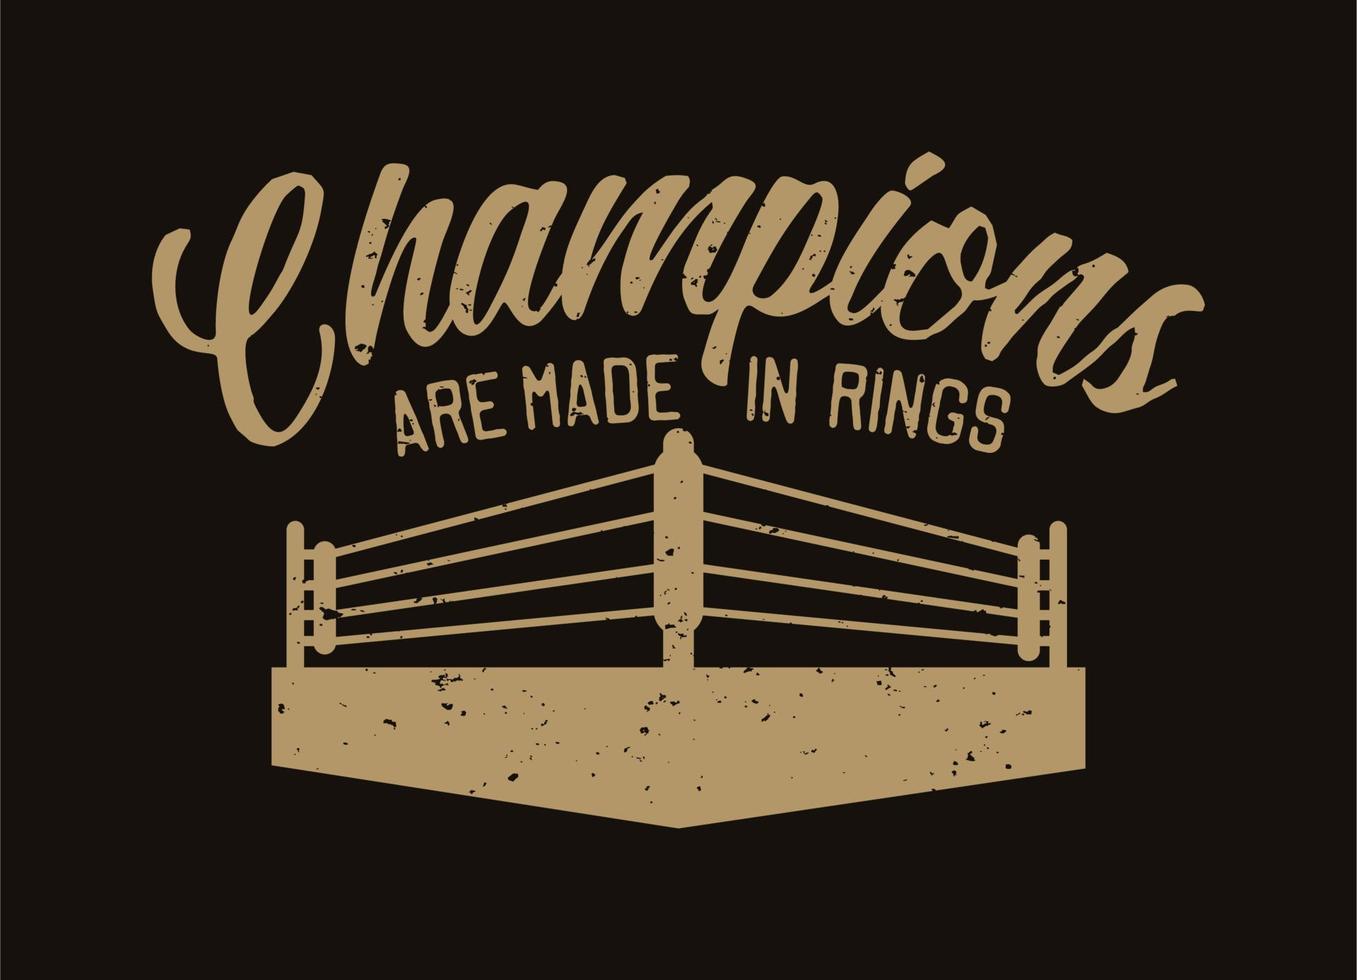 Los campeones de tipografía de lema de cita de boxeo están hechos en anillos con ilustración de anillo en estilo retro vintage vector